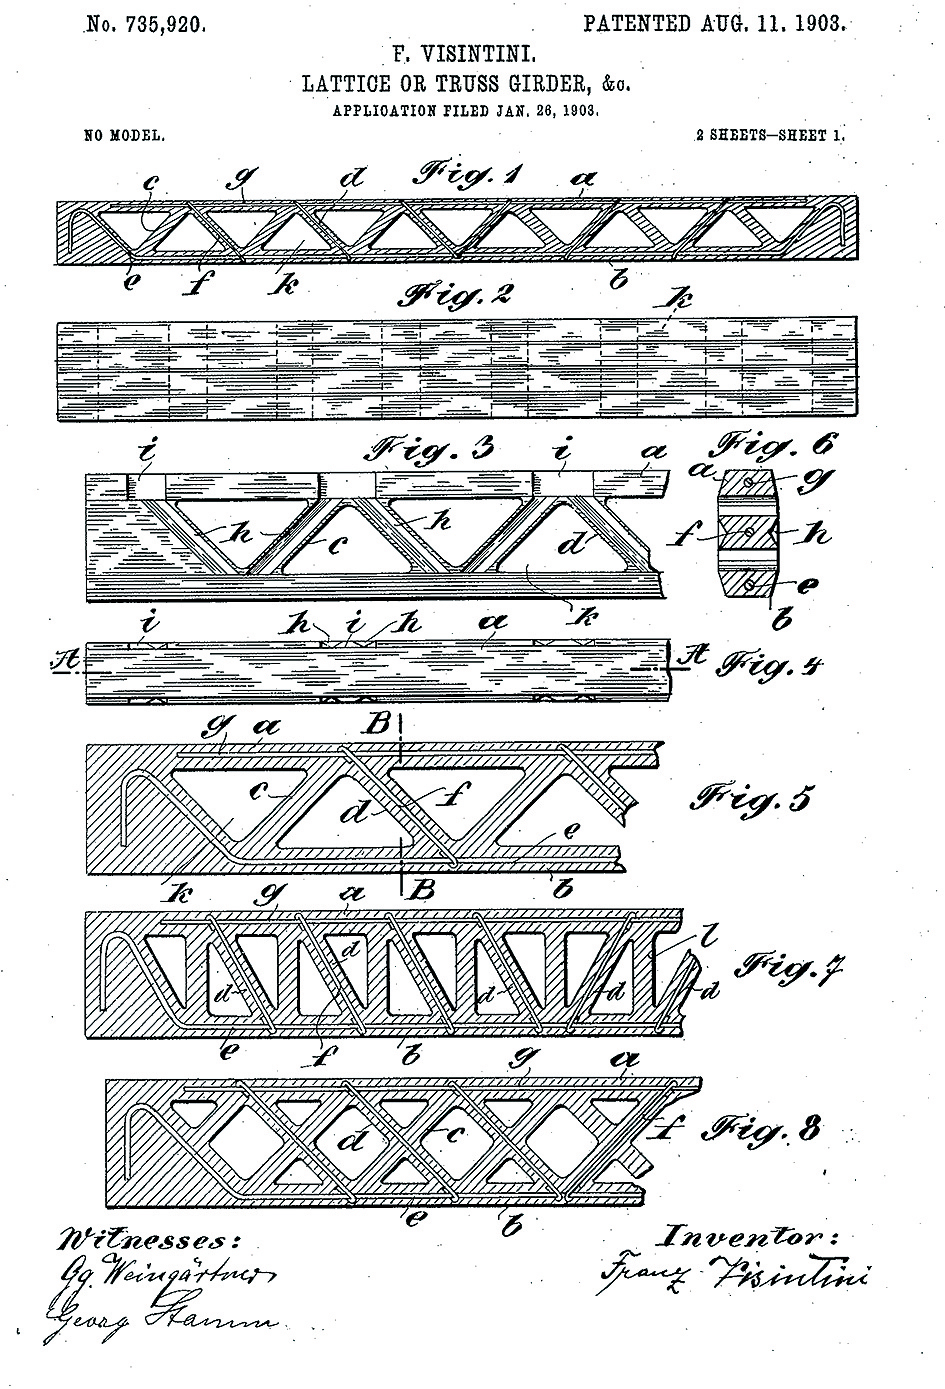 Obr. 2 Visintiniho patent z roku 1903